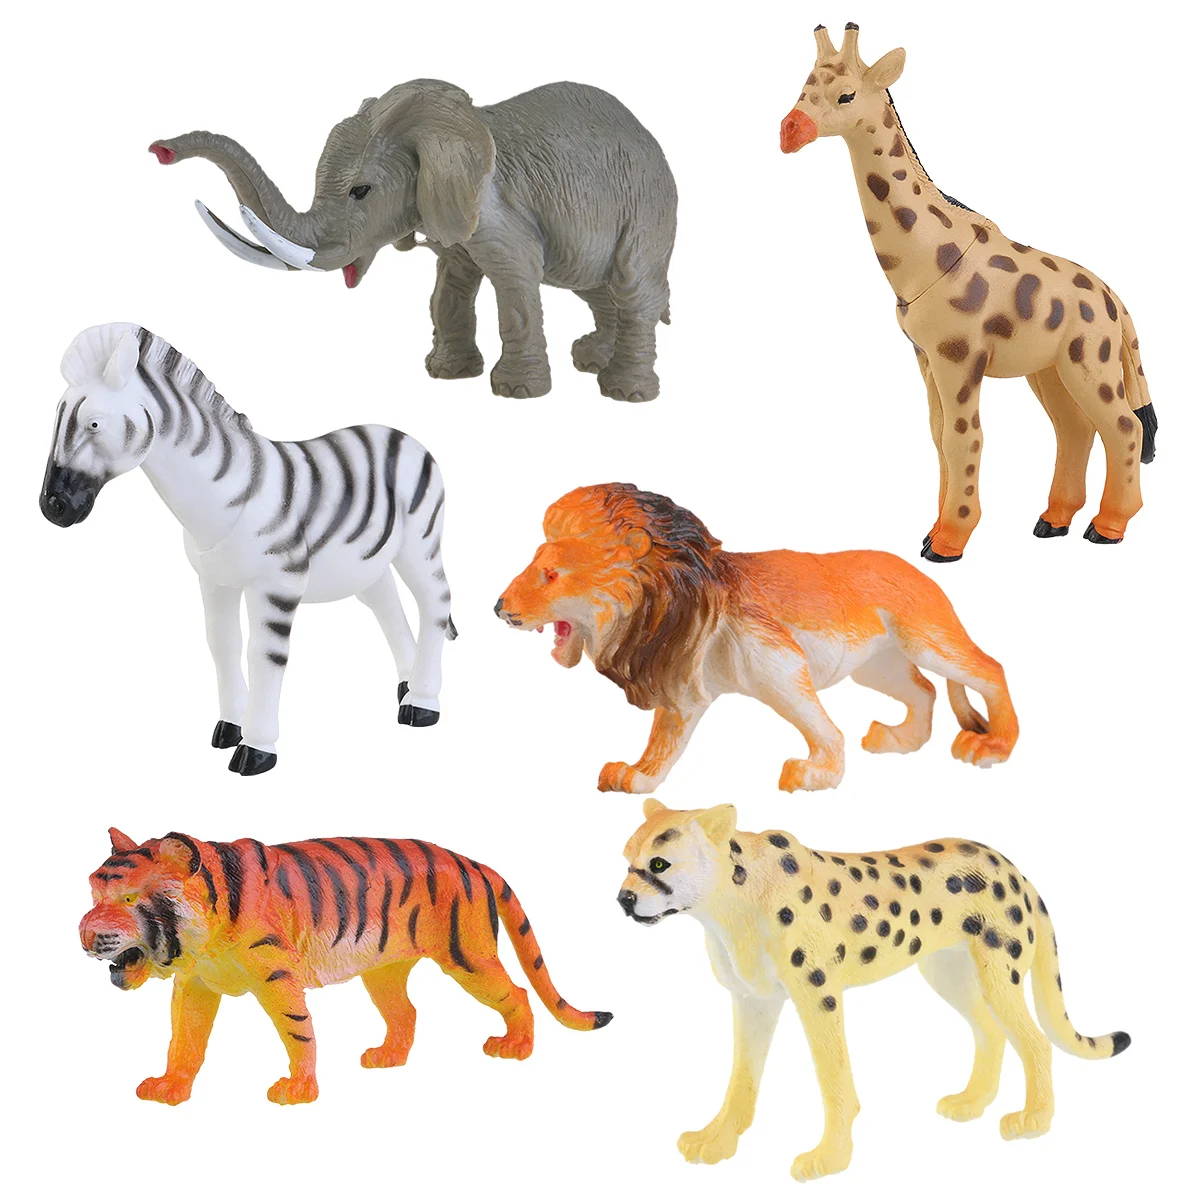 

NUOLUX упаковка из 6 диких животных игрушка пластиковая модель Лев Жираф Тигр Зебра слон Леопард